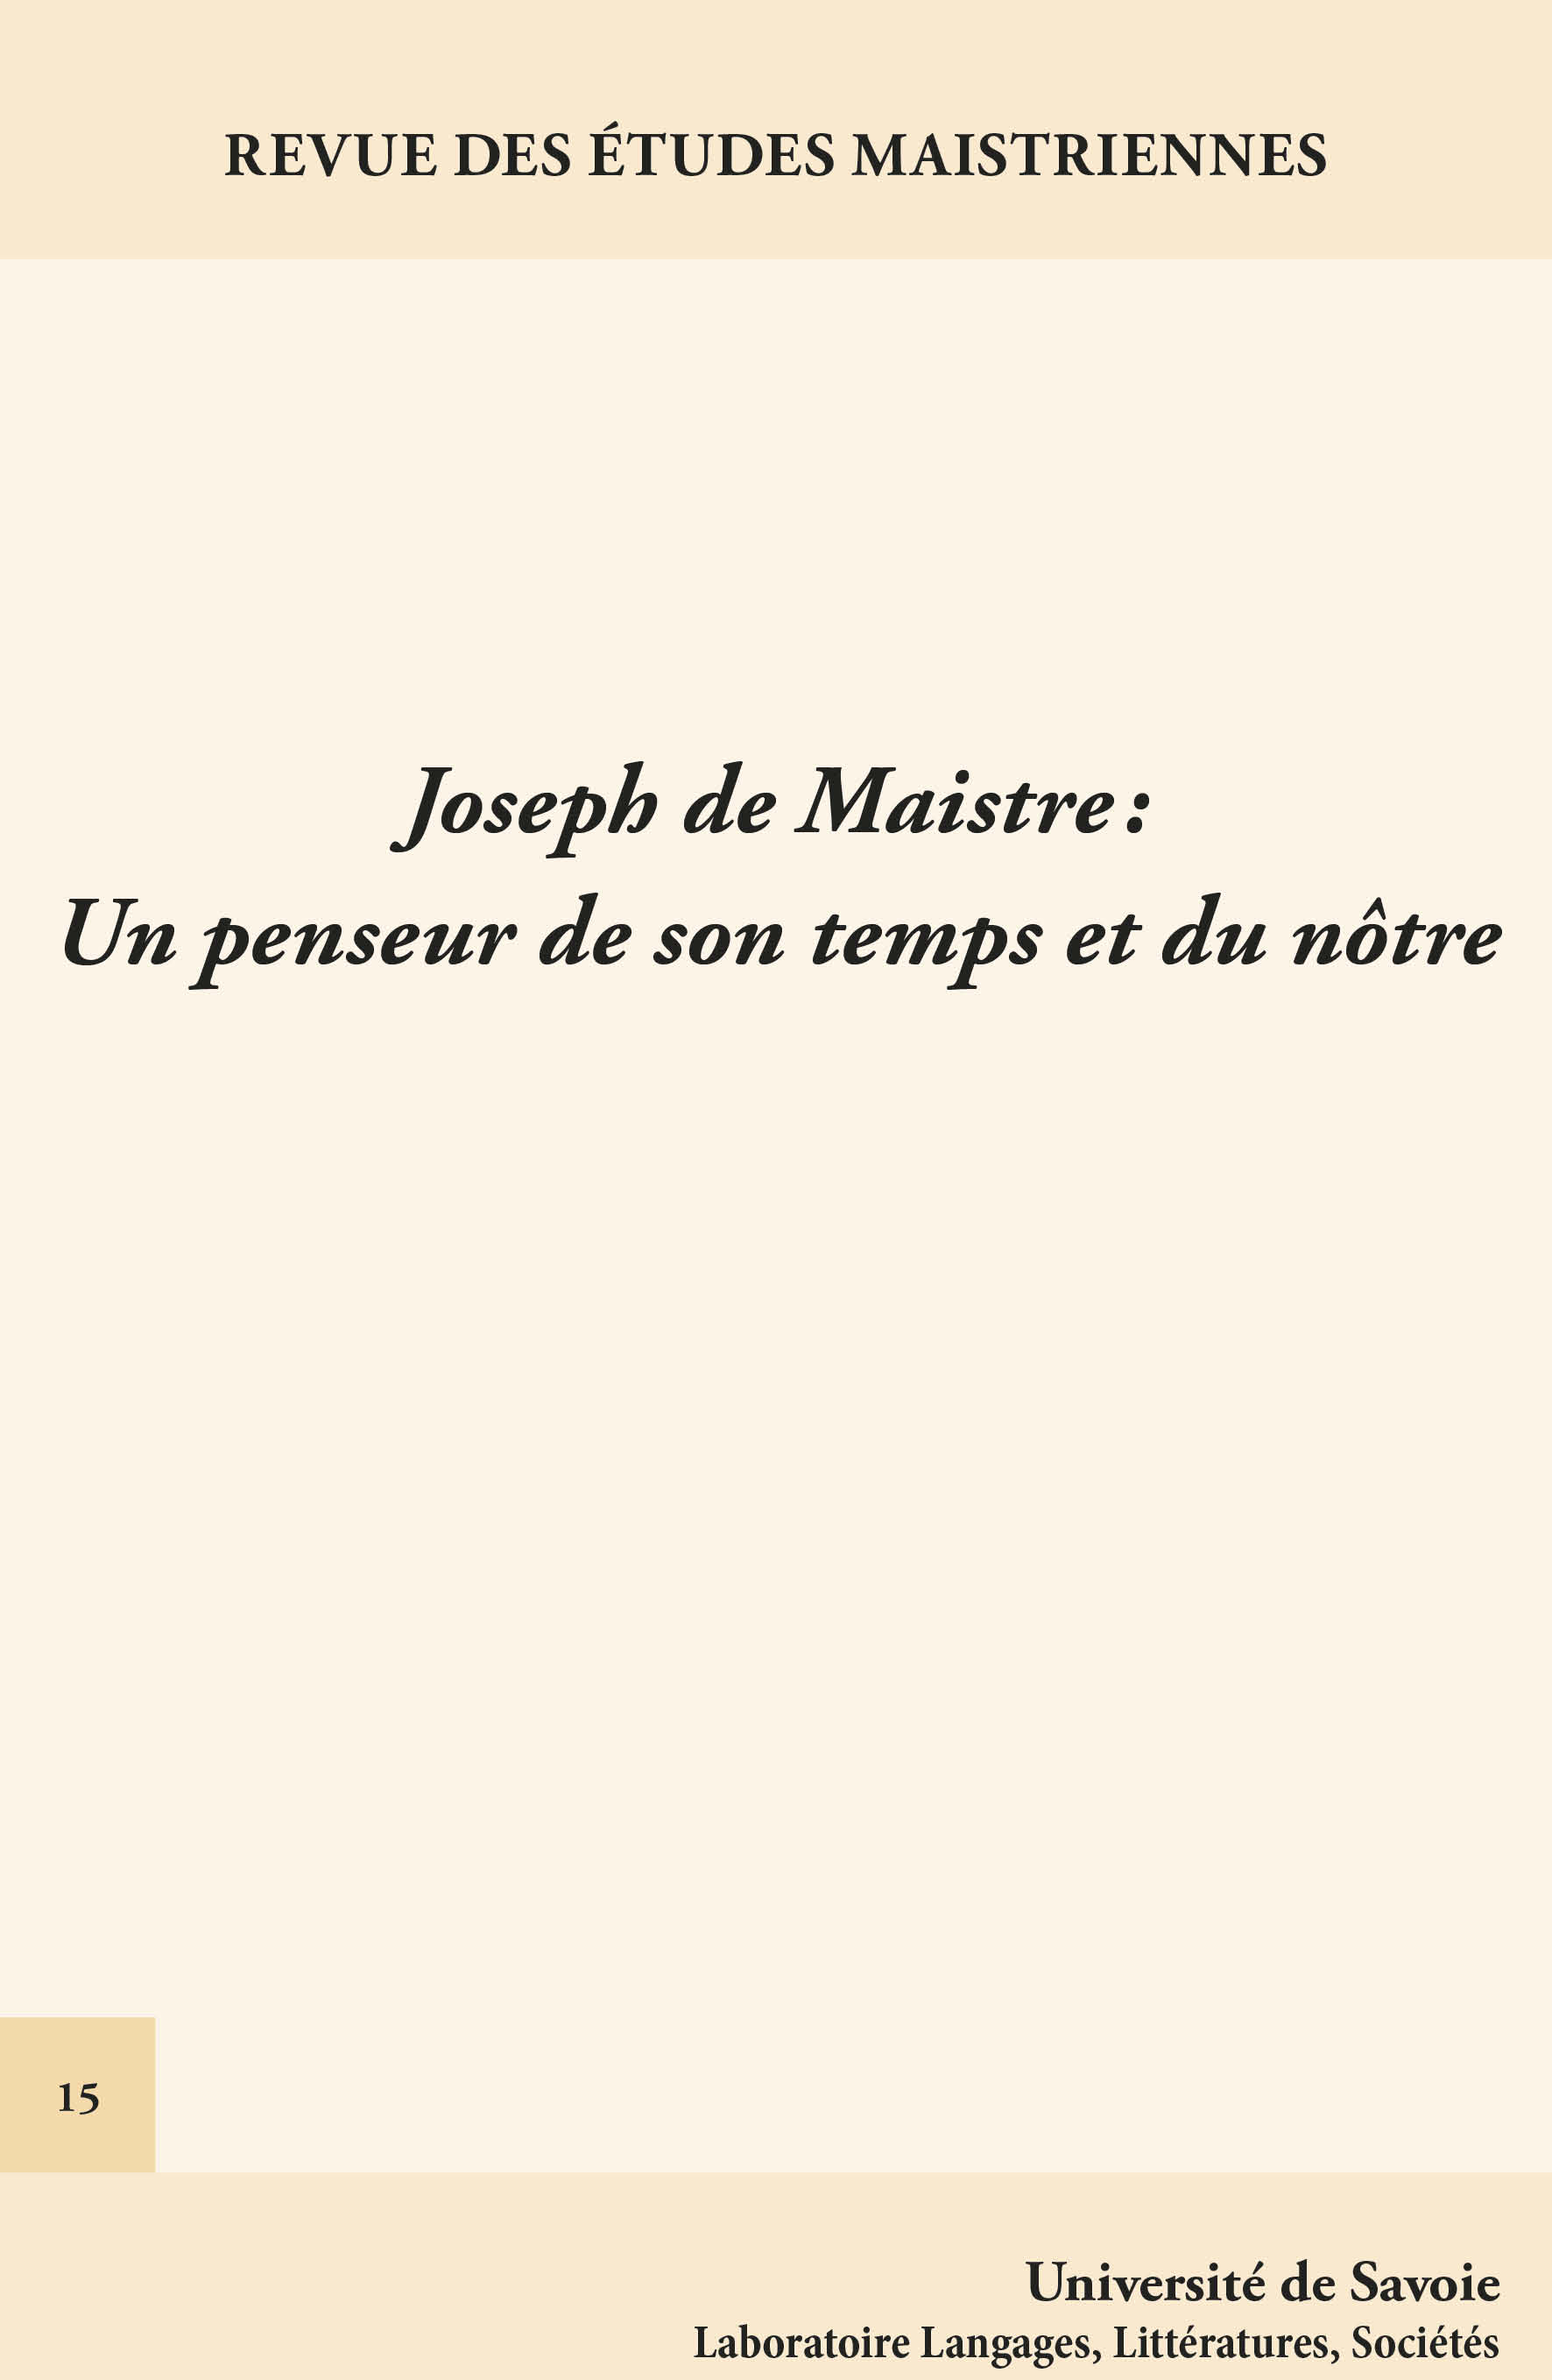 Joseph de Maistre: un penseur de son temps 